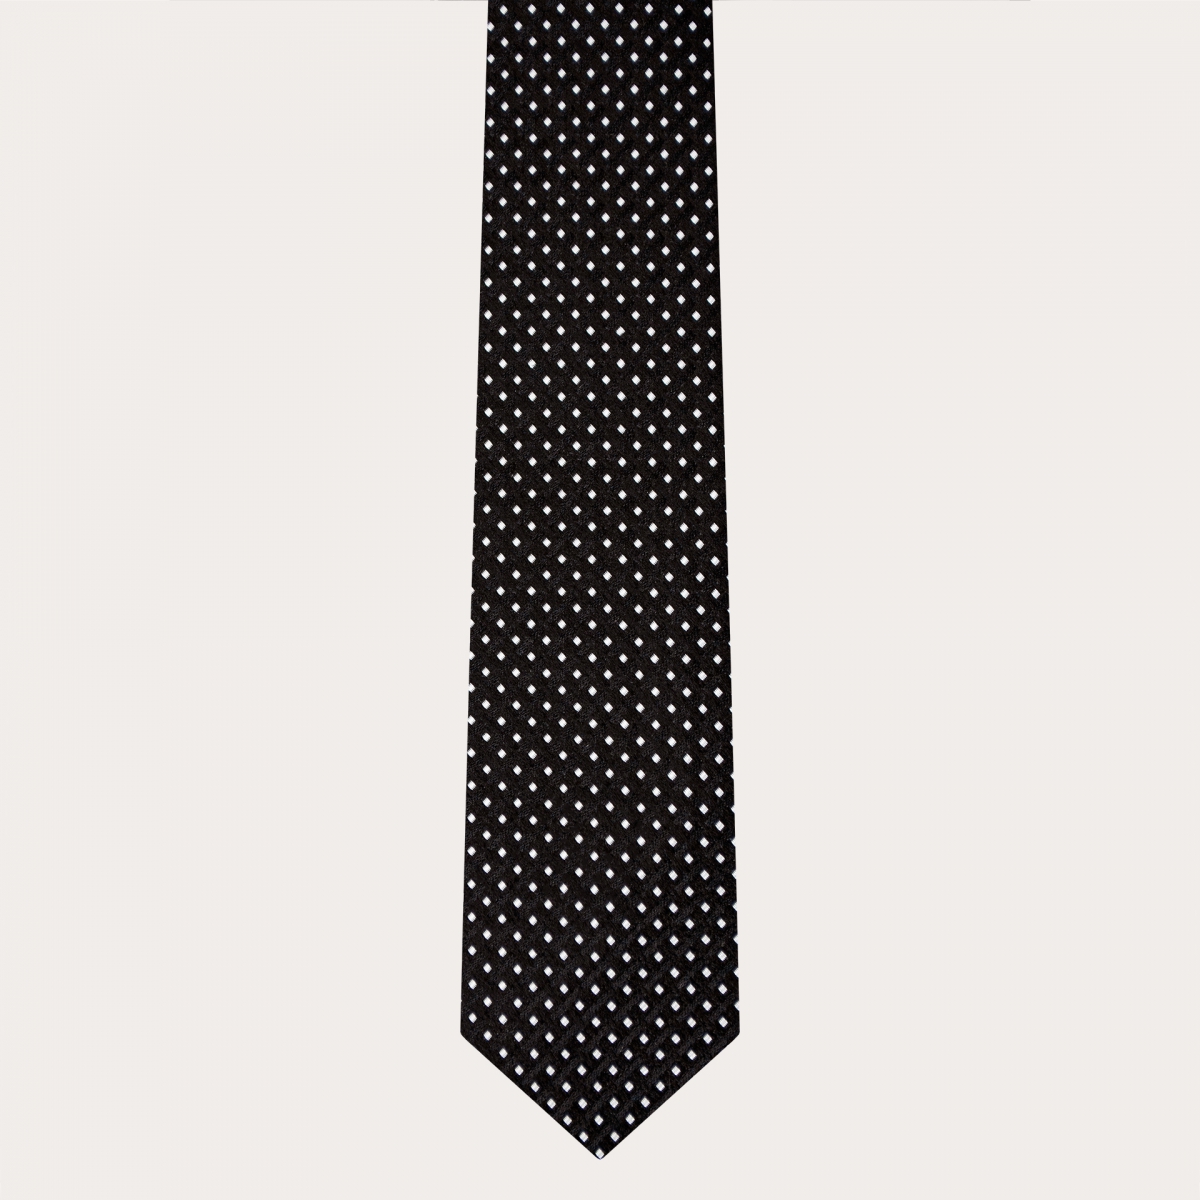 Corbata elegante en jacquard de seda, negra con estampado de puntos geométricos